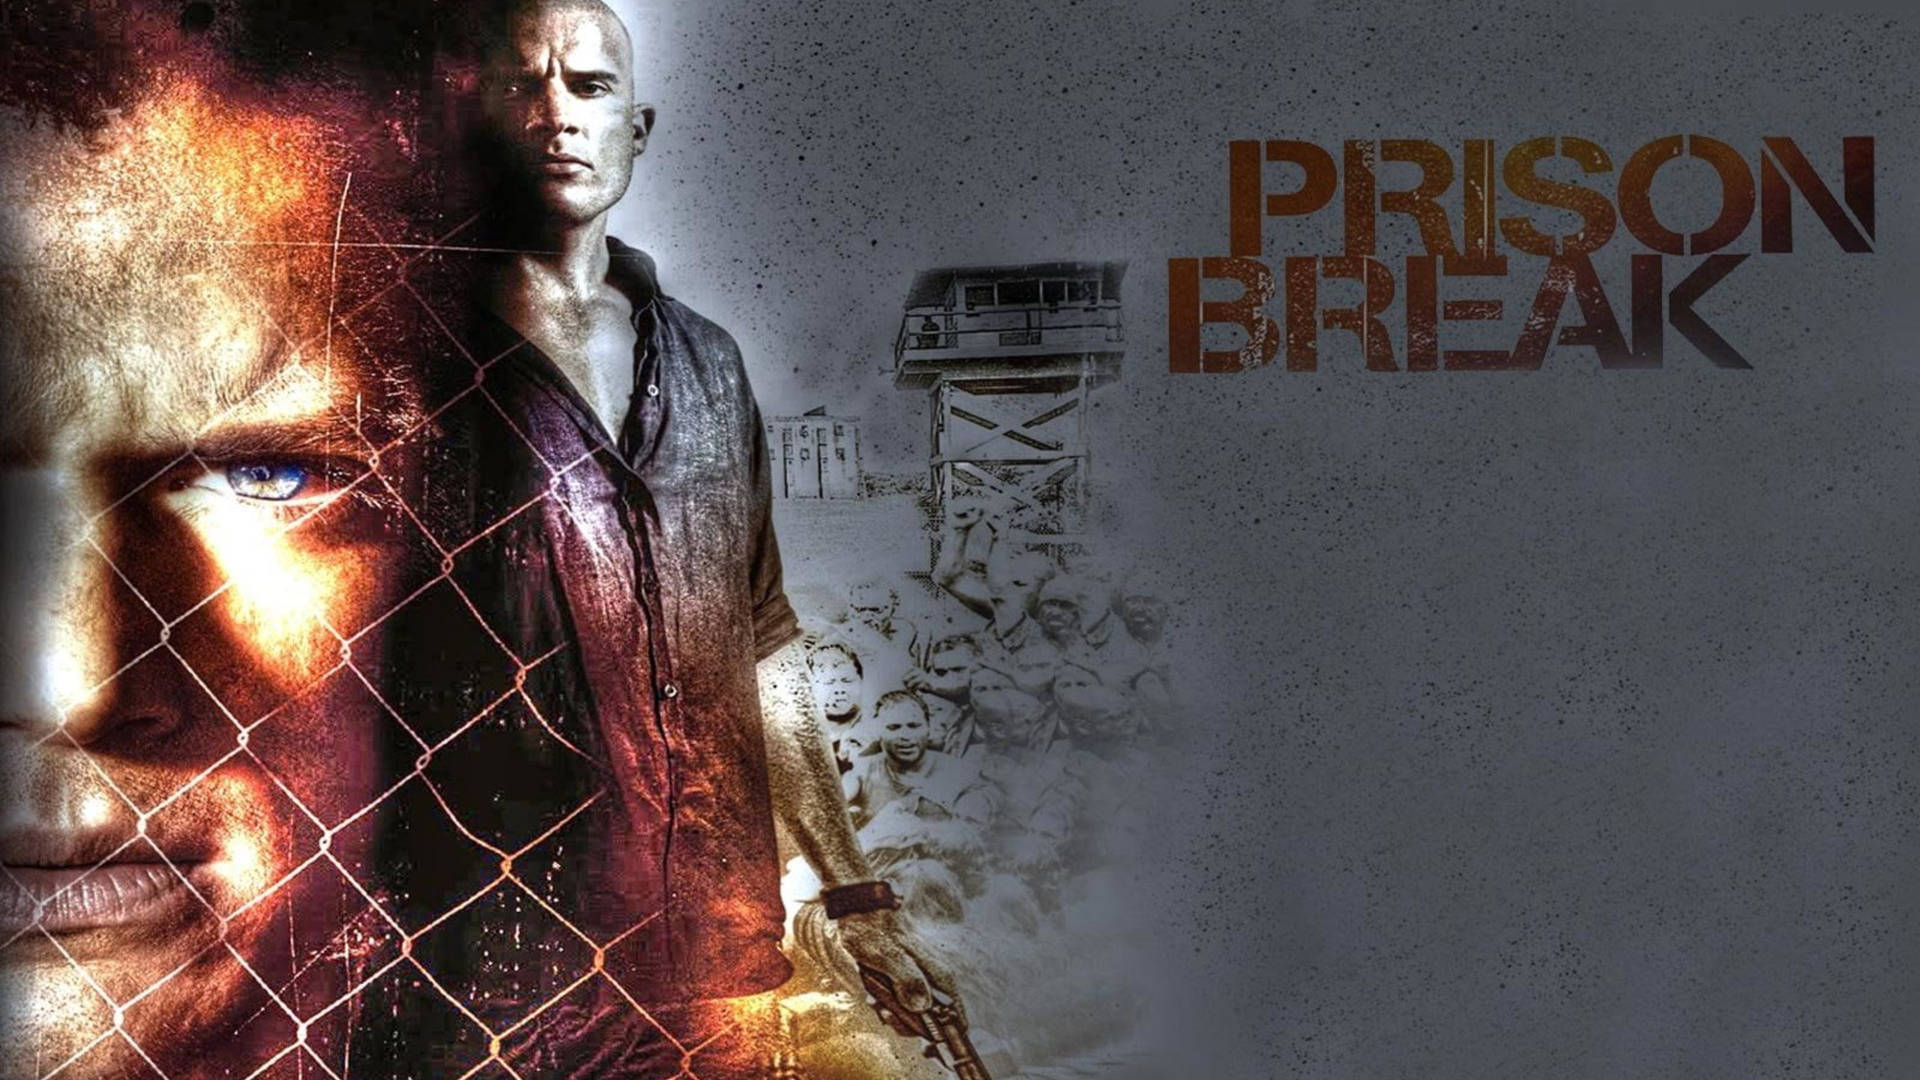 Prison Break In Digital Cover Background